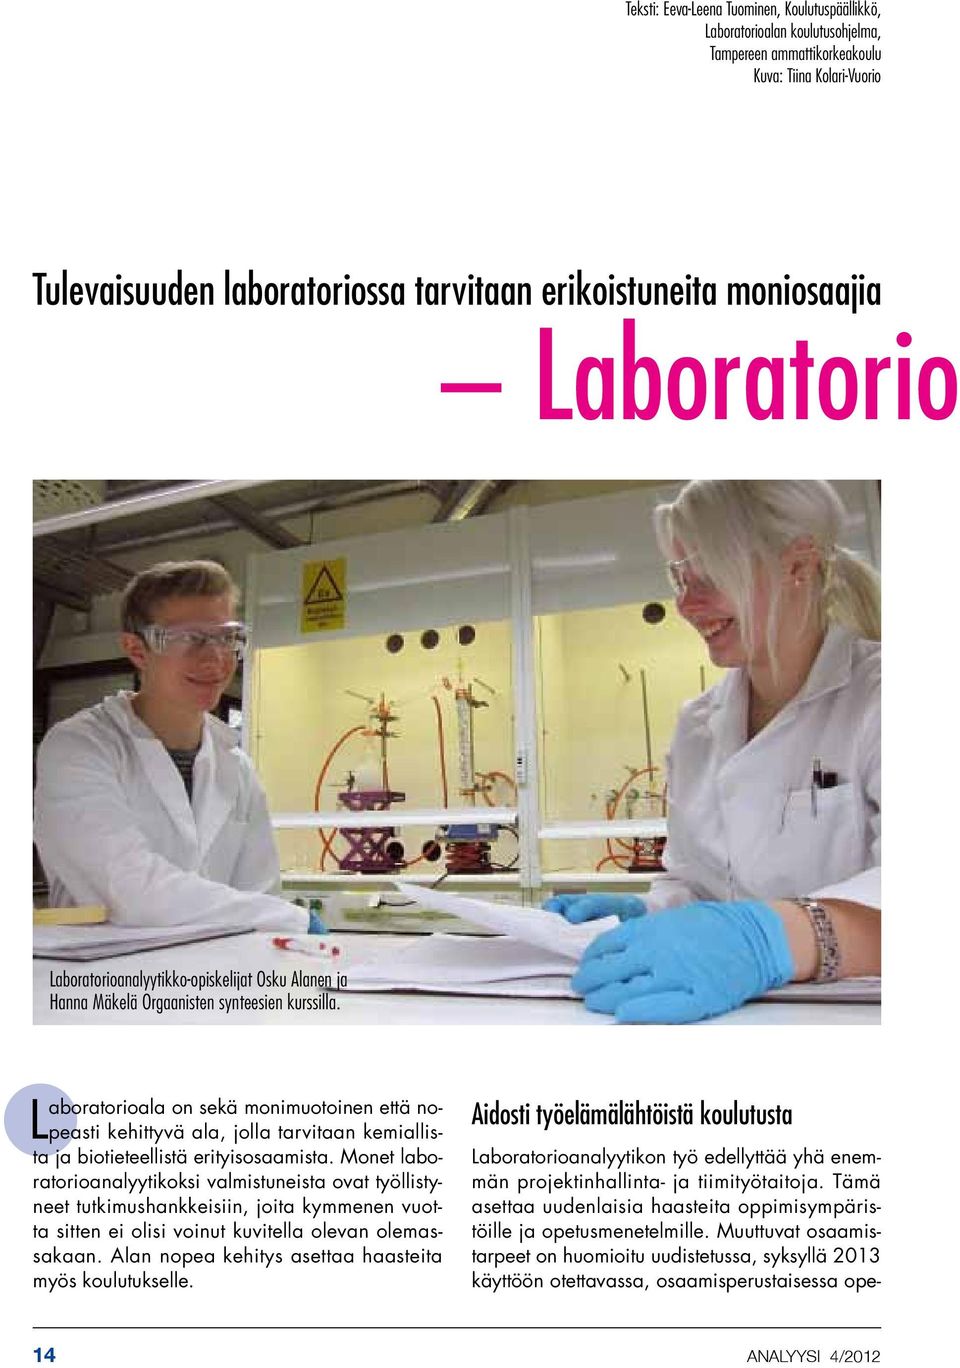 Laboratorioala on sekä monimuotoinen että nopeasti kehittyvä ala, jolla tarvitaan kemiallista ja biotieteellistä erityisosaamista.